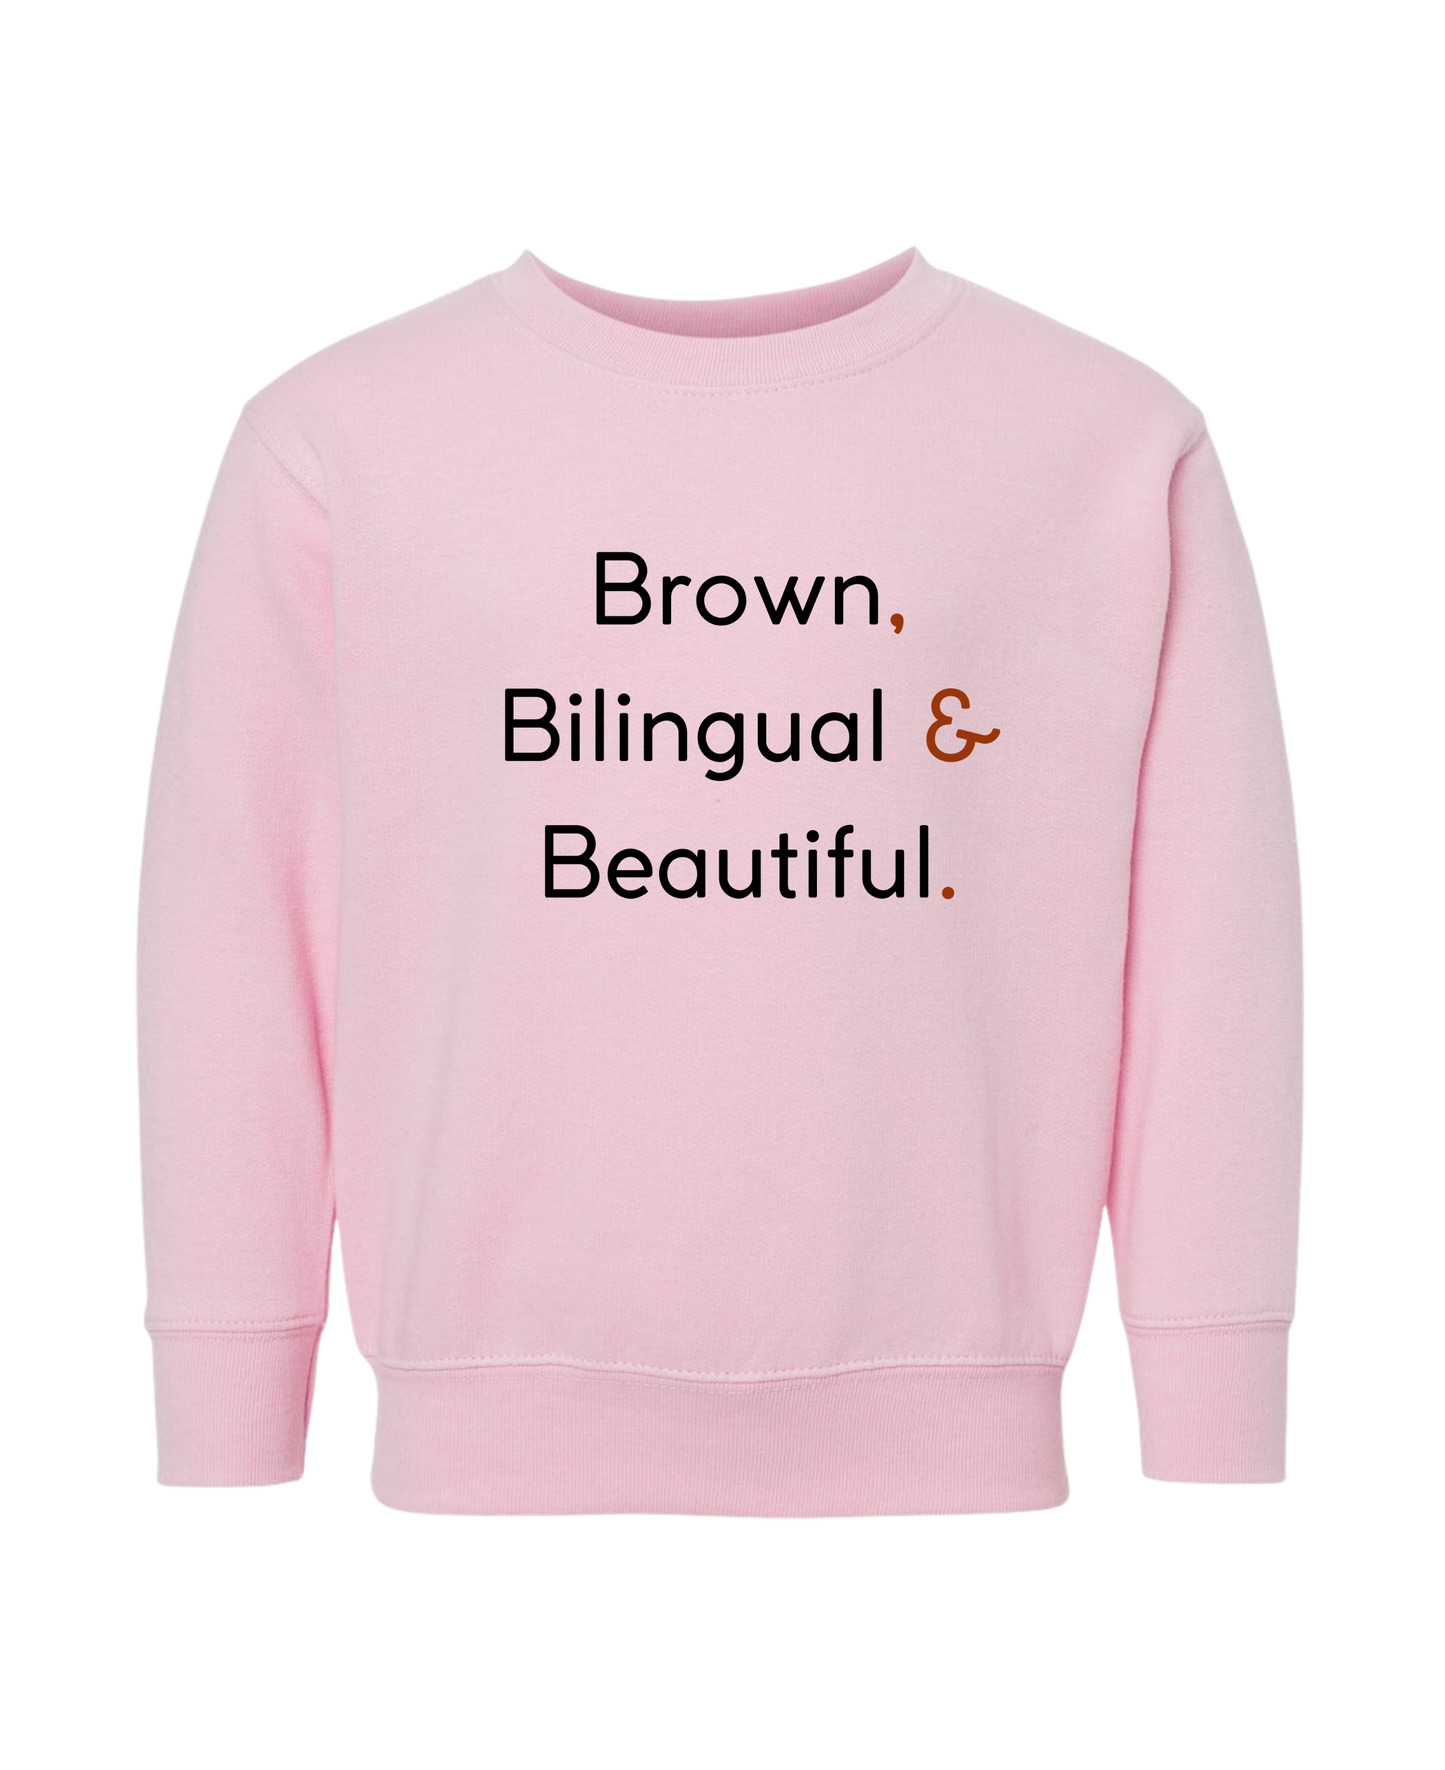 Brown, Bilingual & Beautiful - DTG